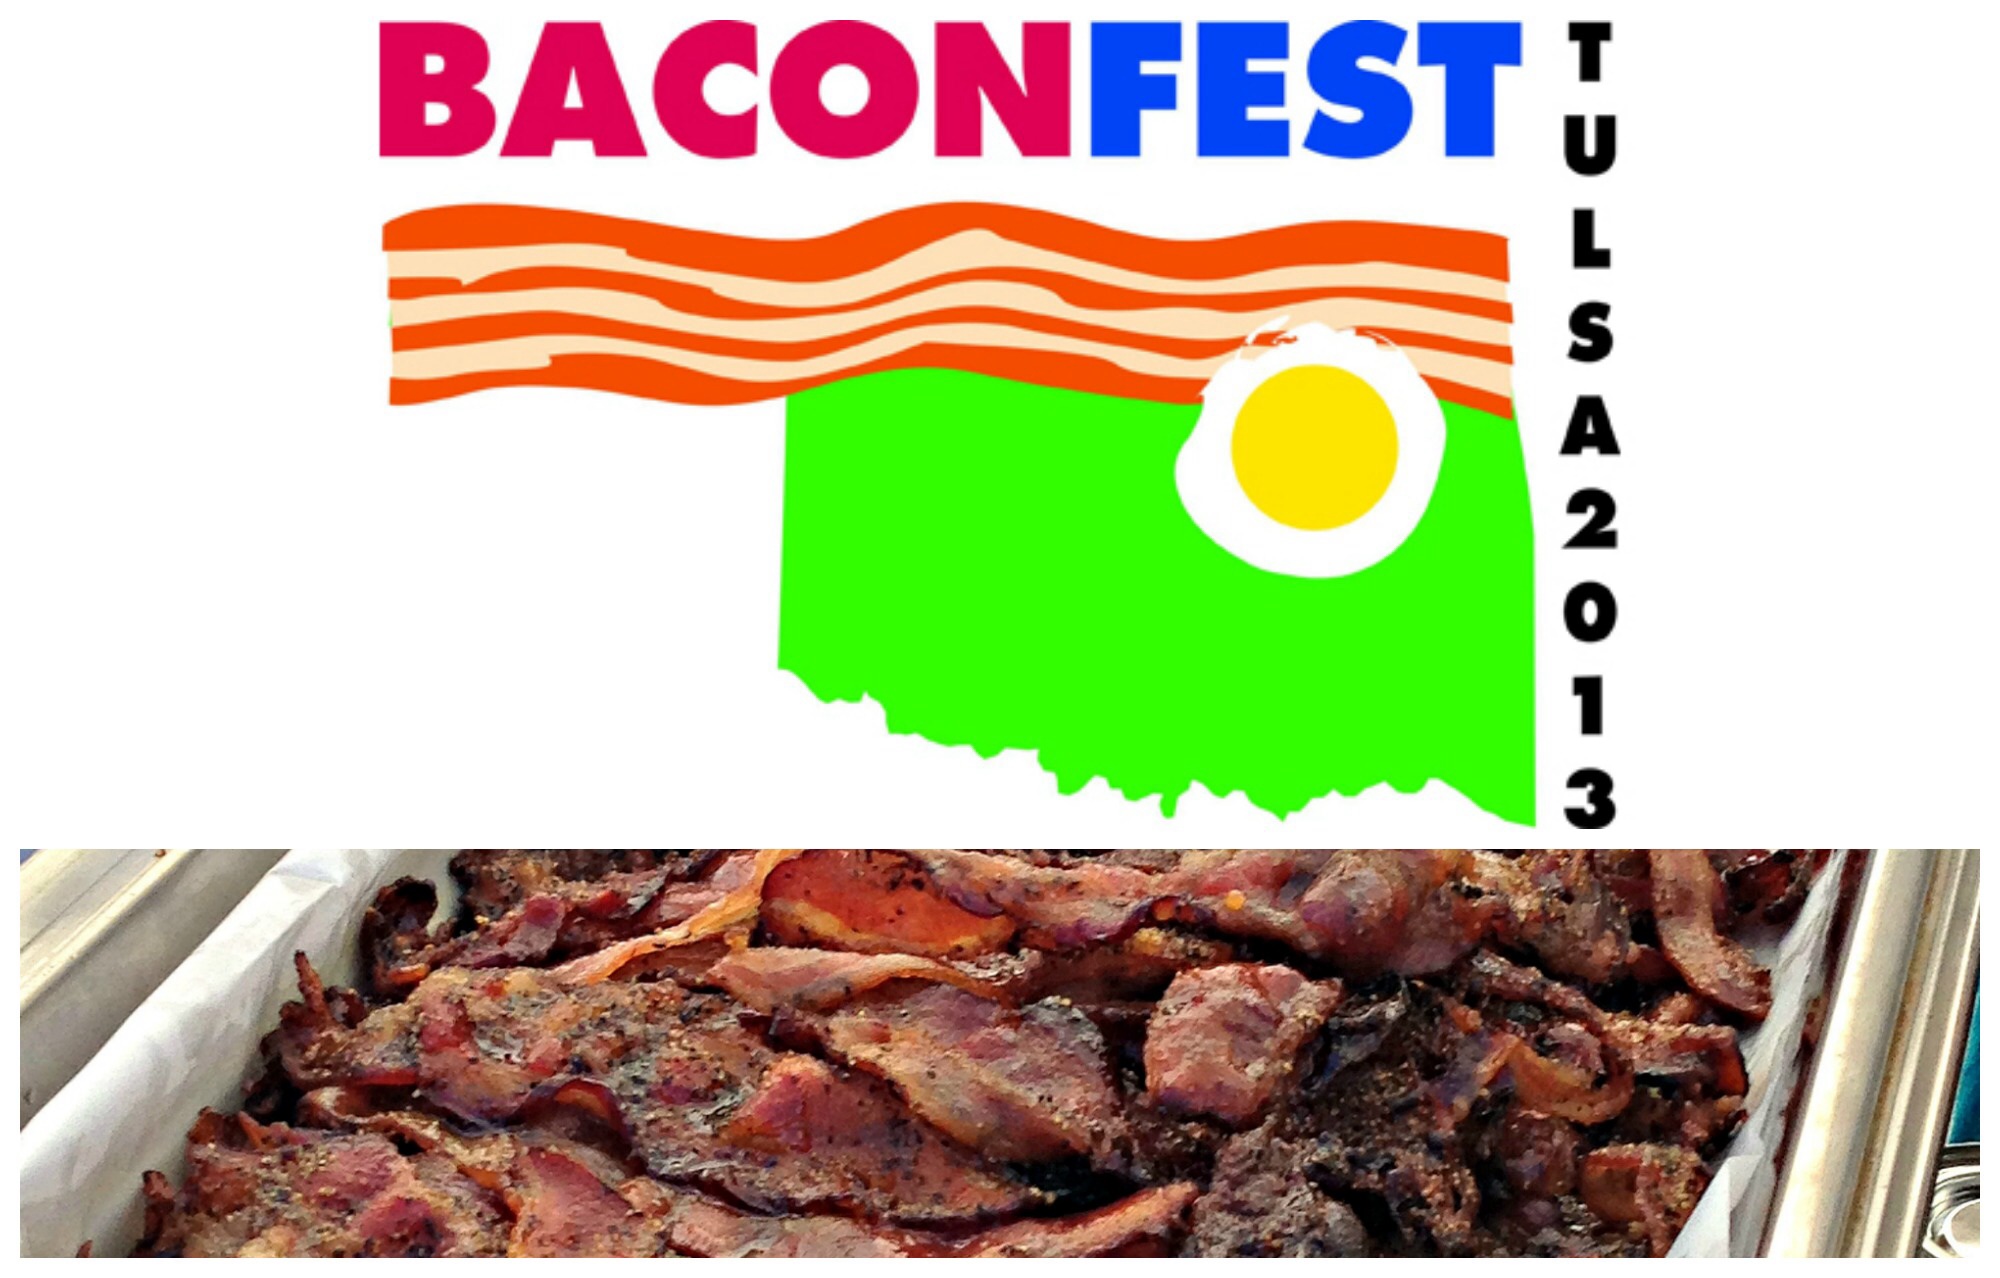 Baconfest Tulsa 2013